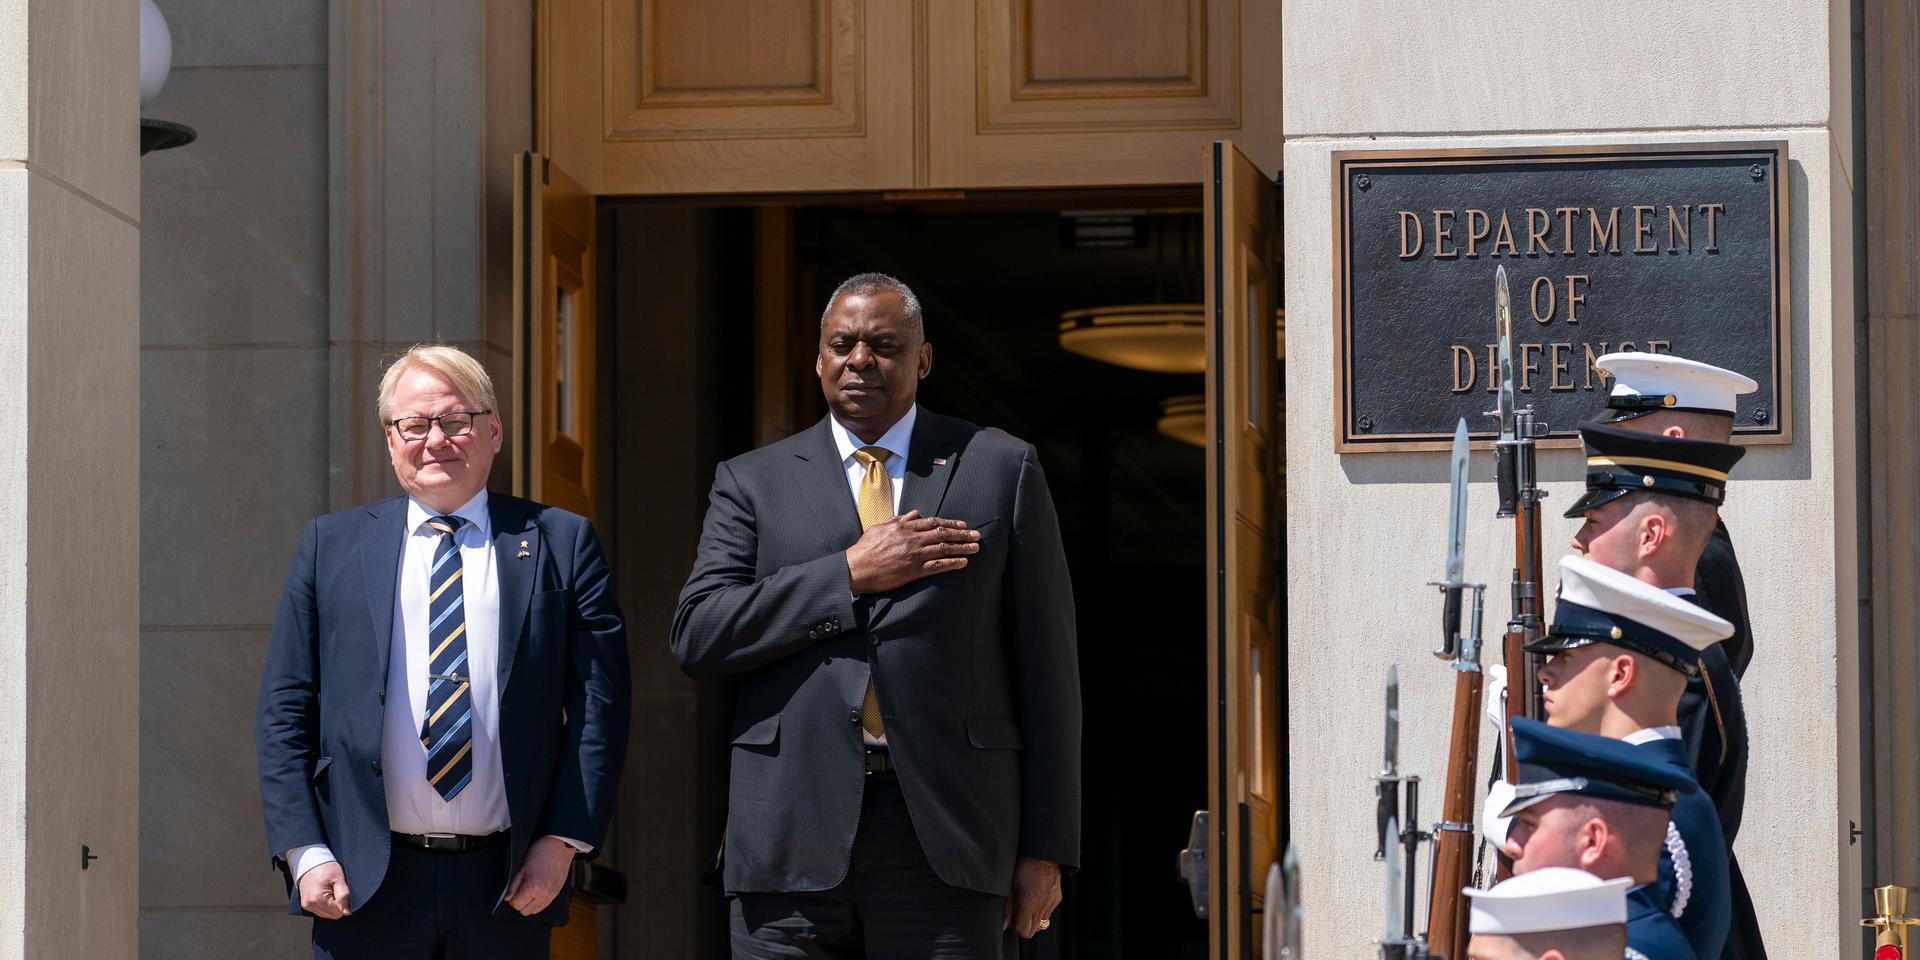 Försvarsminister Peter Hultqvist (S) med sin amerikanske kollega Lloyd Austin utanför Pentagon i Washington.